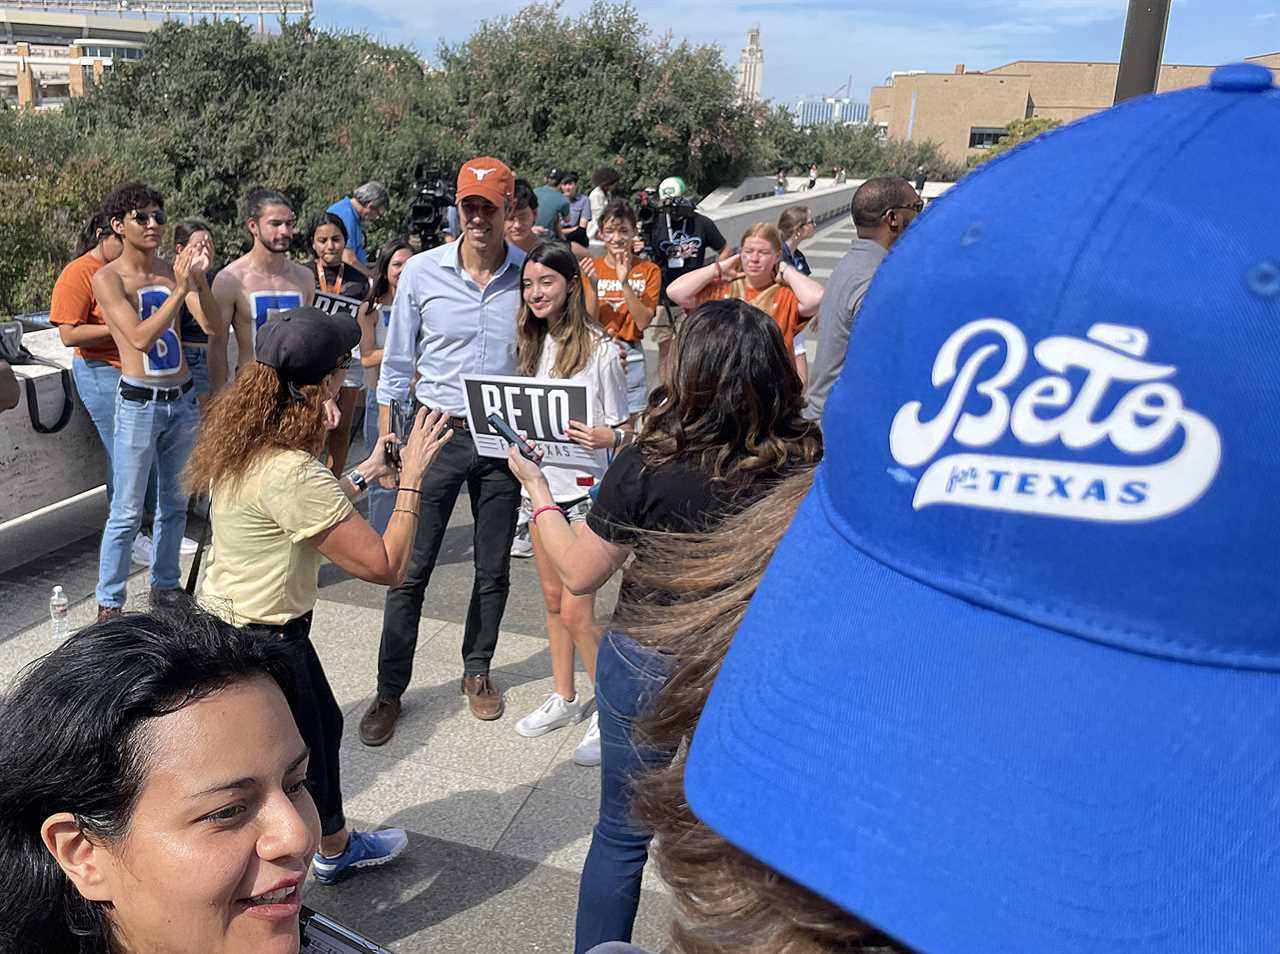 Texas: Beto's Last Stand